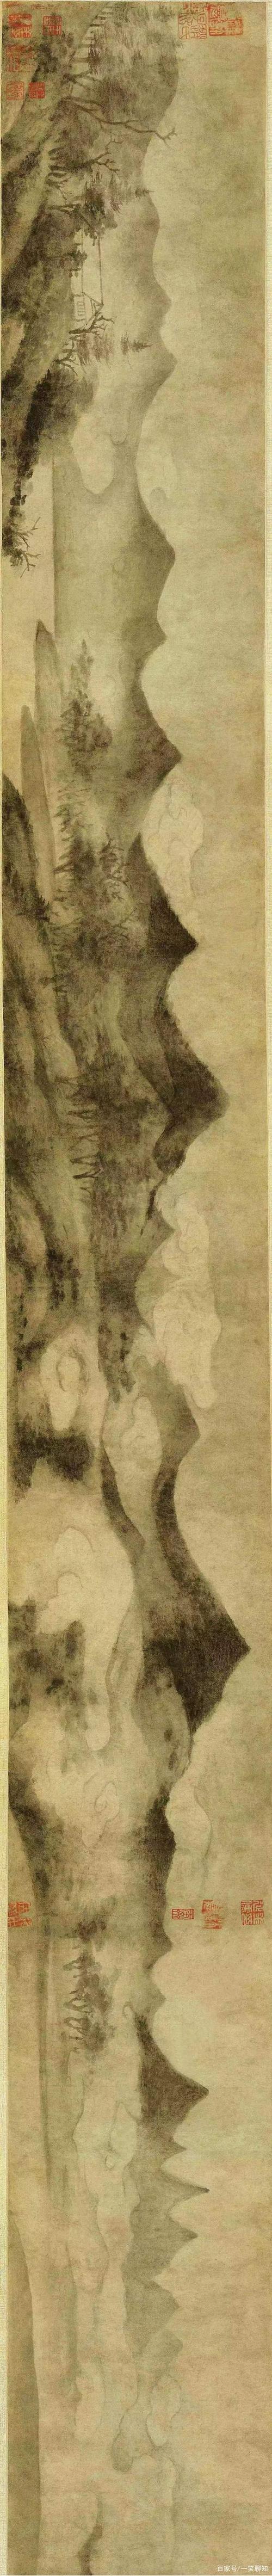 米芾用墨点画出烟雨潇湘700年后,莫奈用类似画法颠覆了美术界